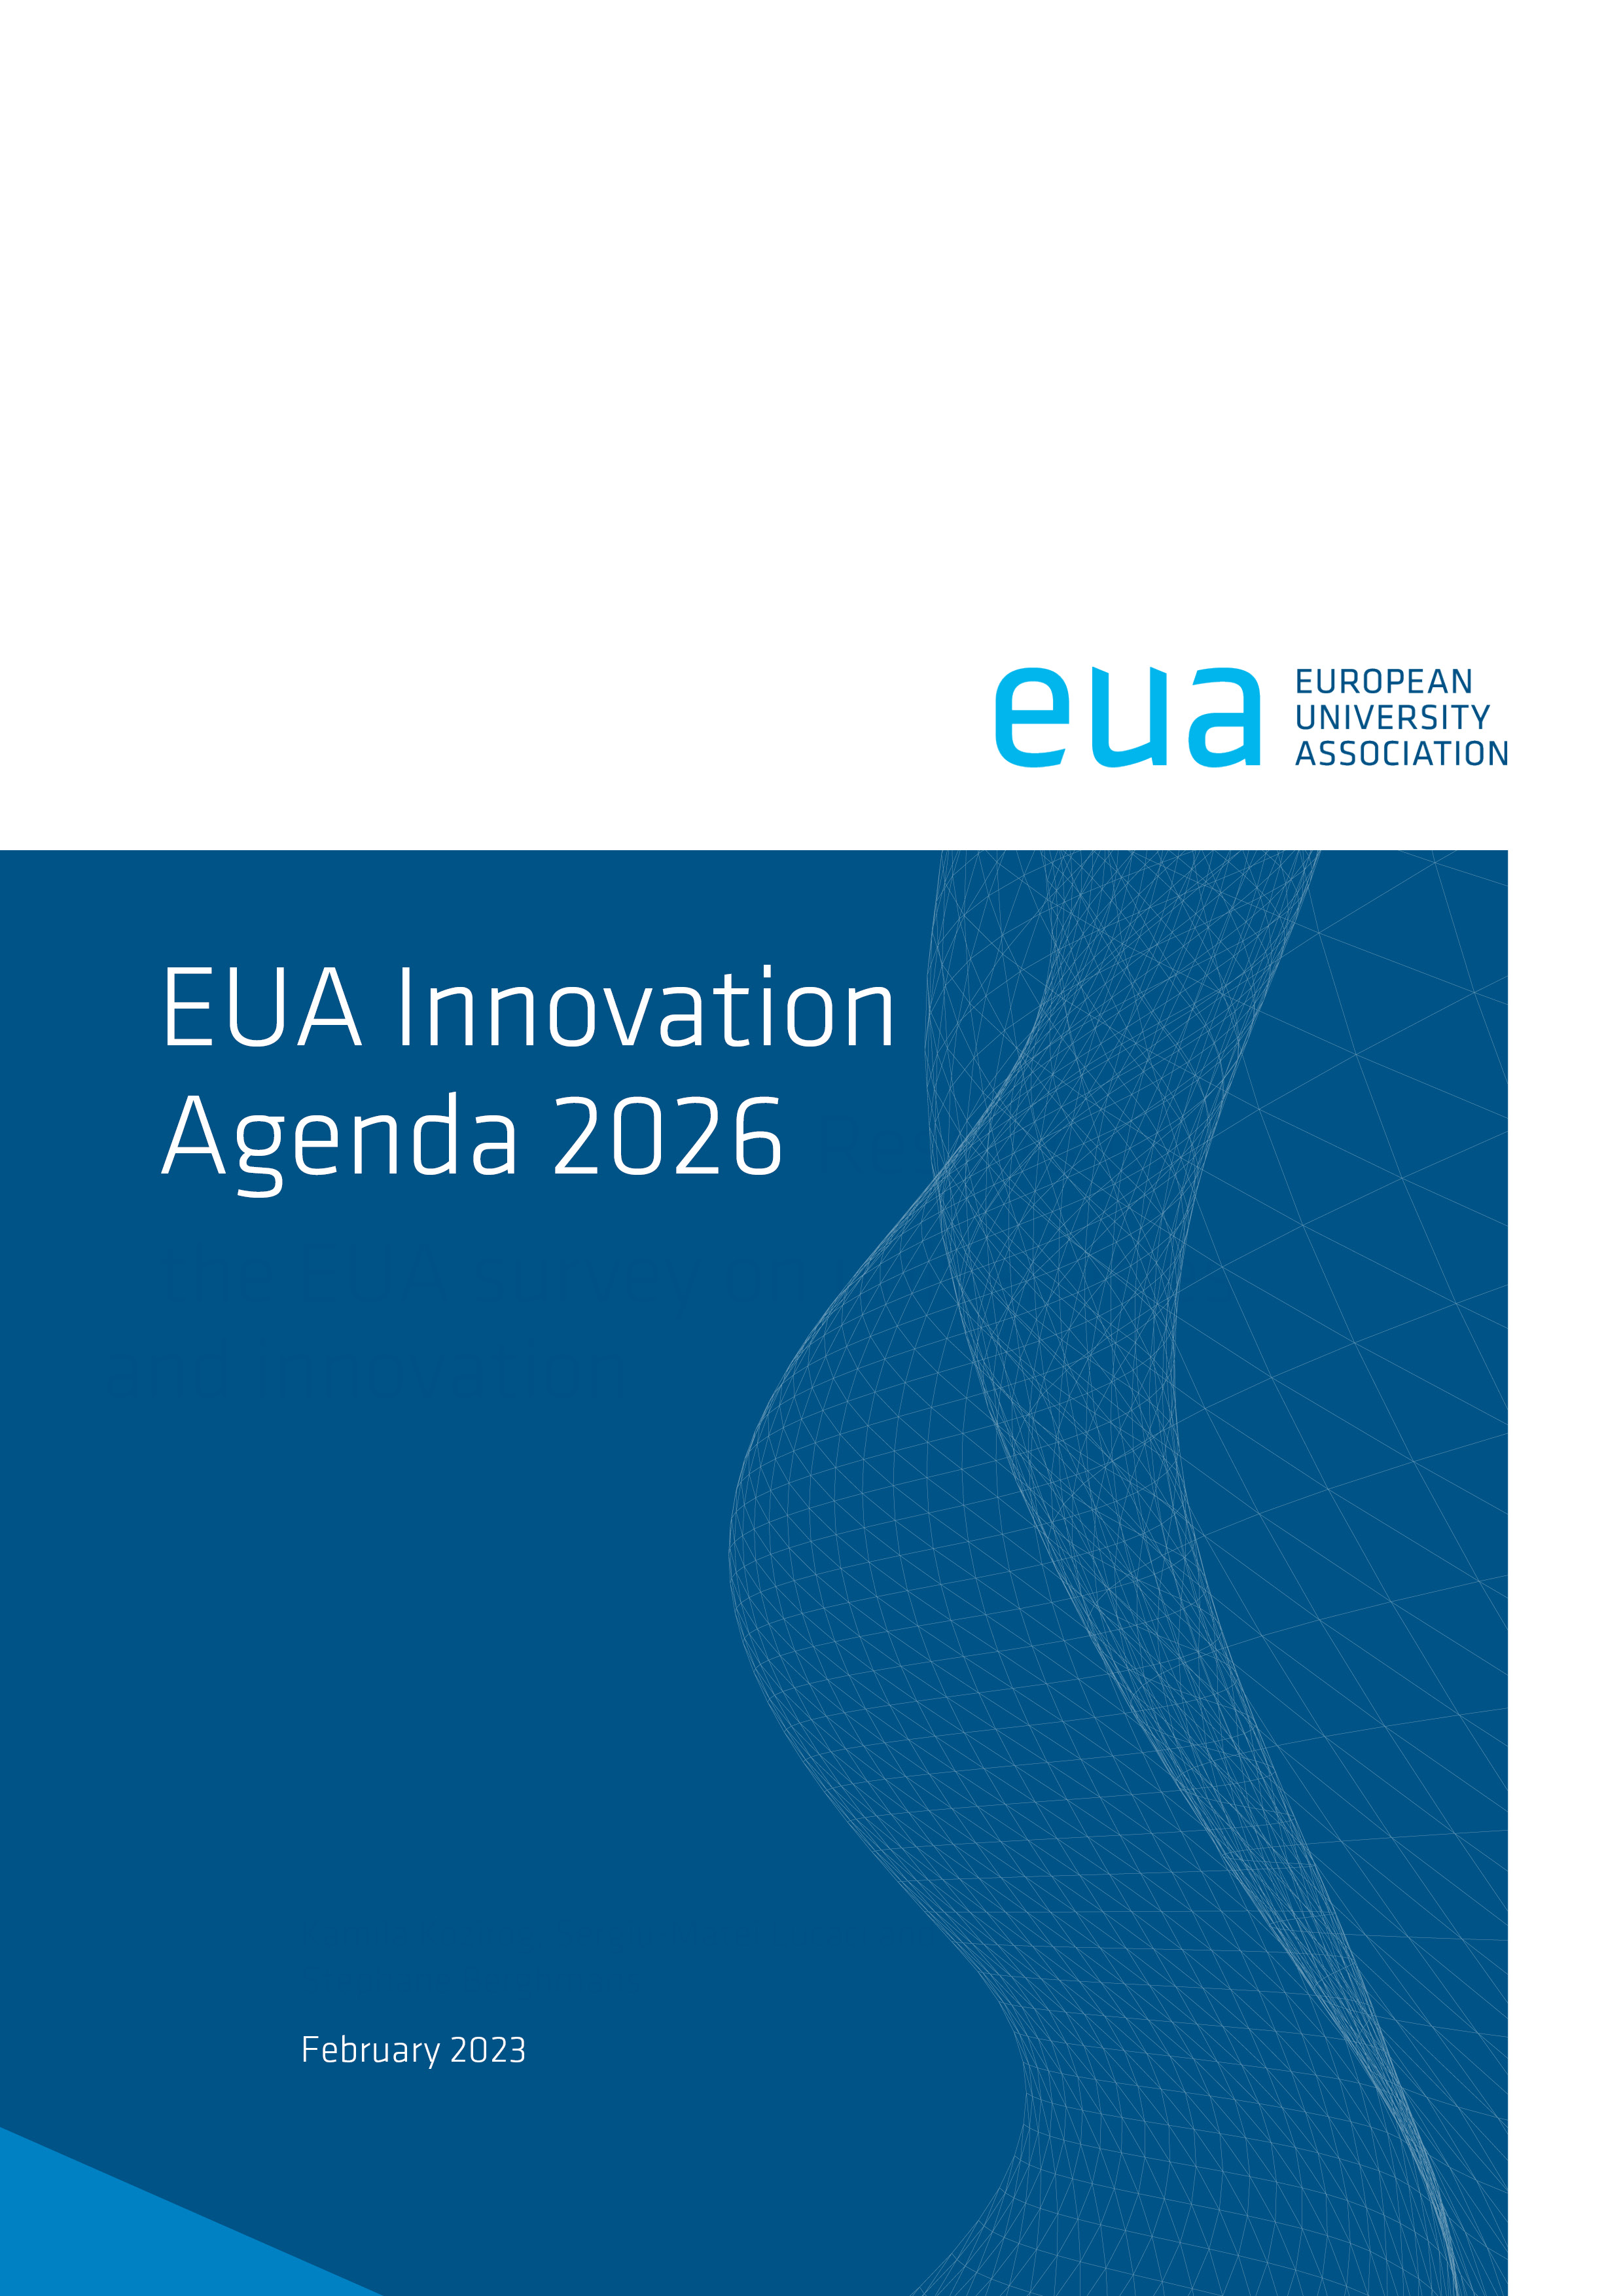 The EUA Innovation Agenda 2026